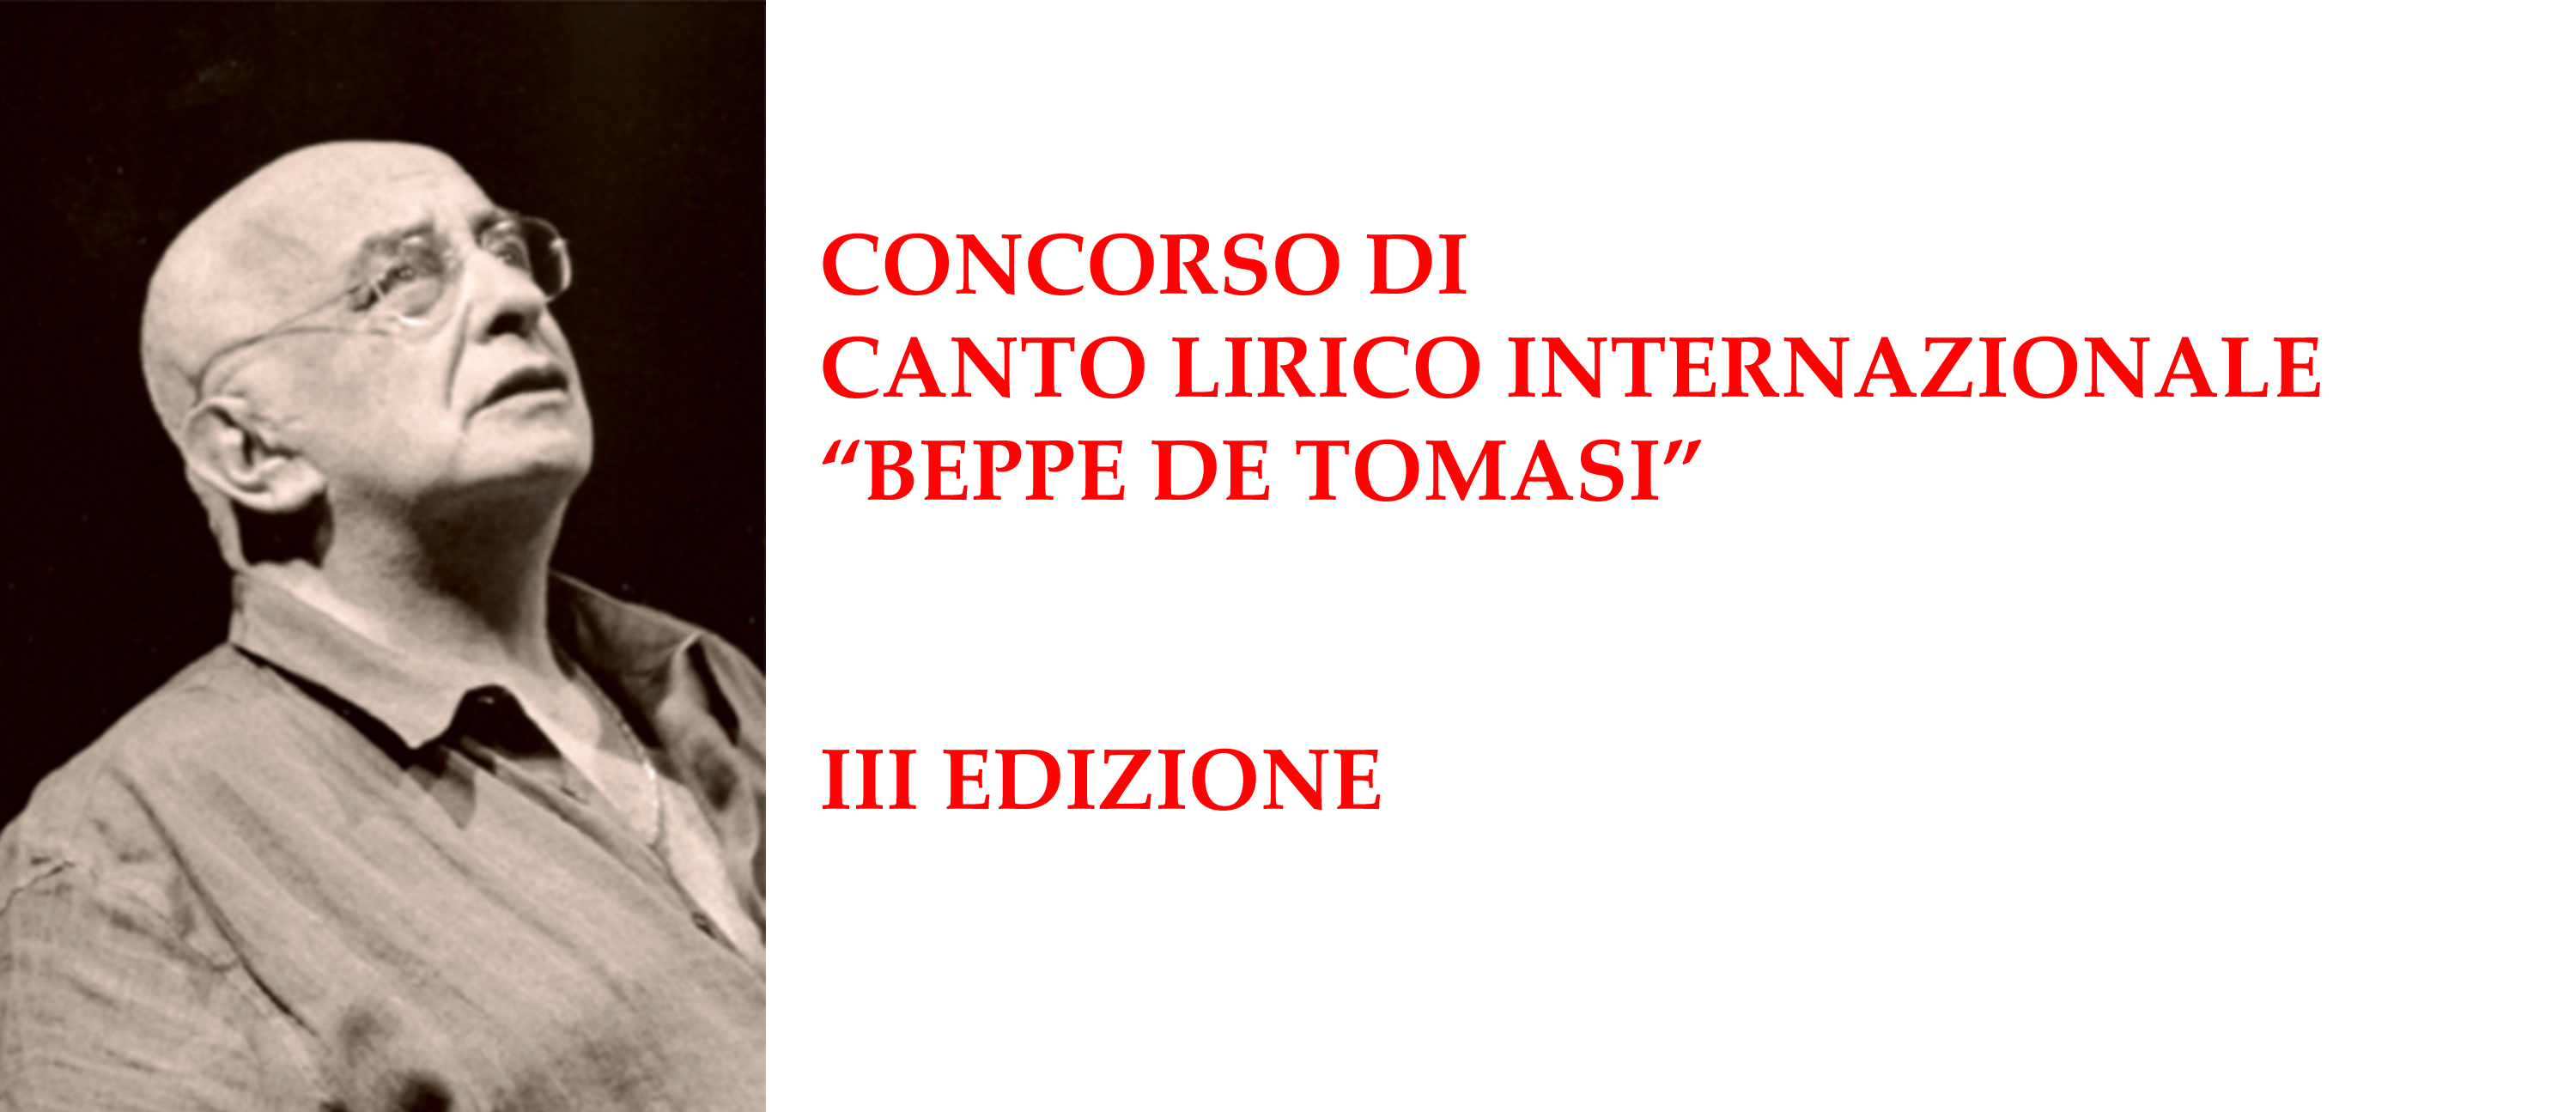 Concorso Internazionale di Canto Lirico "Beppe de Tomasi"